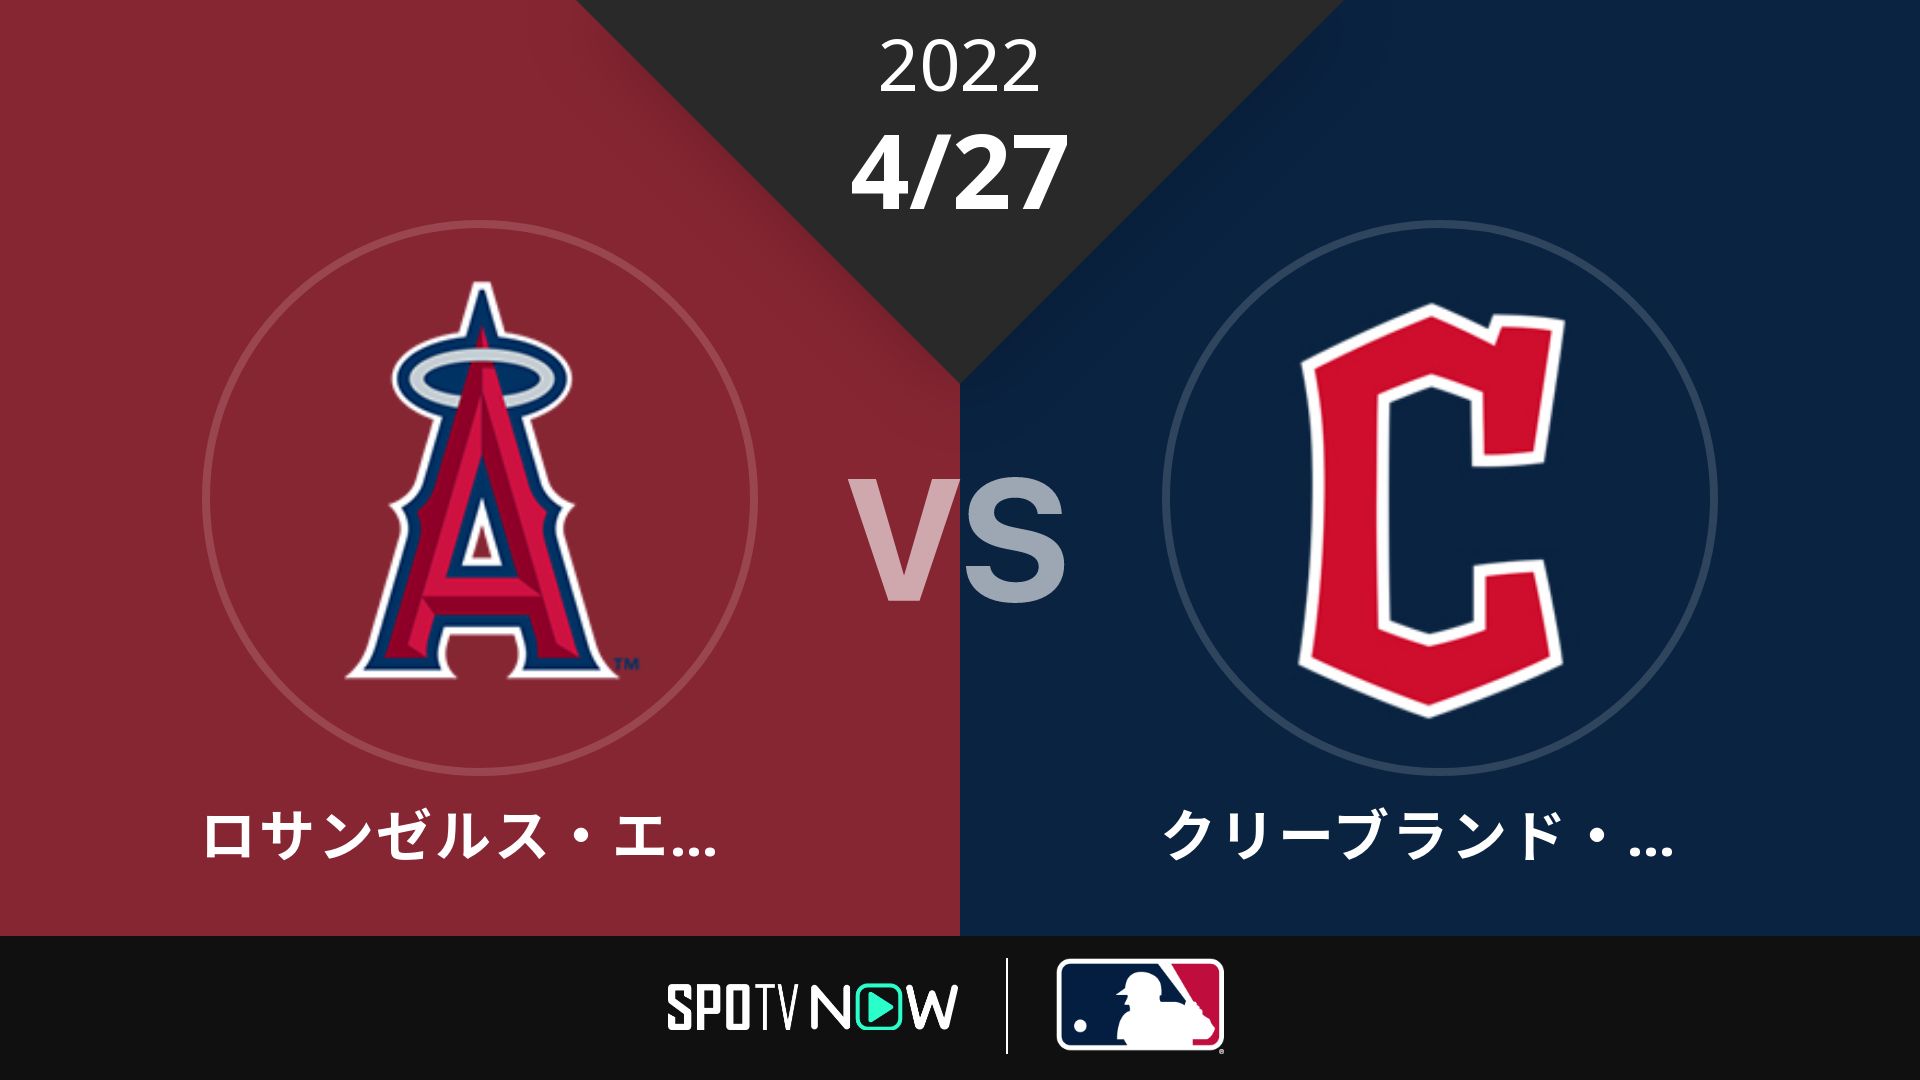 2022/4/27 エンゼルス vs ガーディアンズ [MLB]